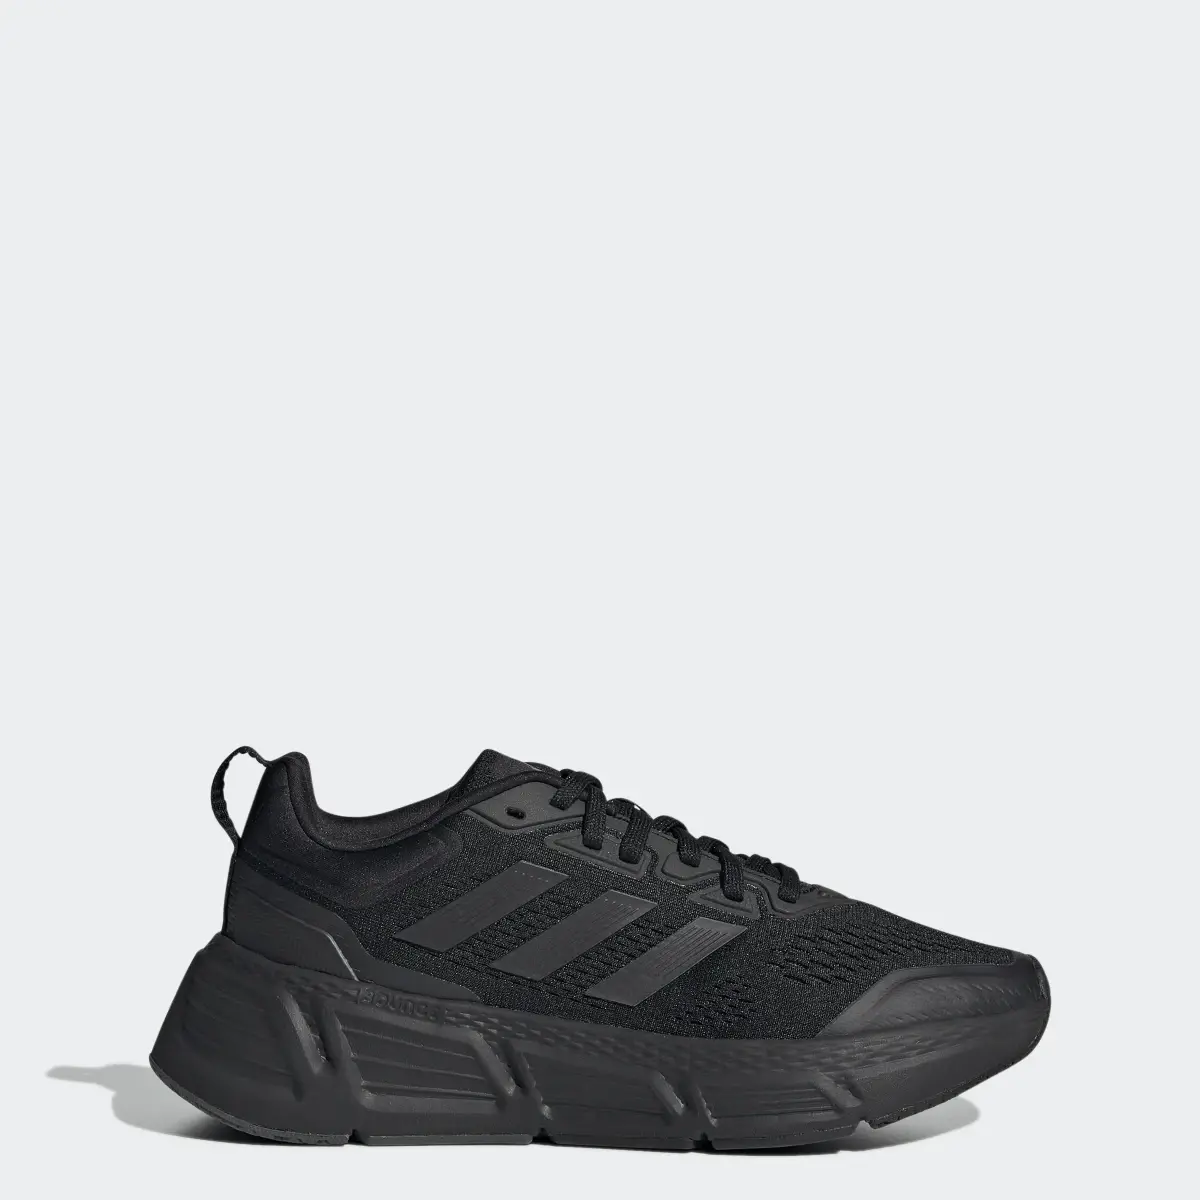 Adidas Chaussure Questar. 1